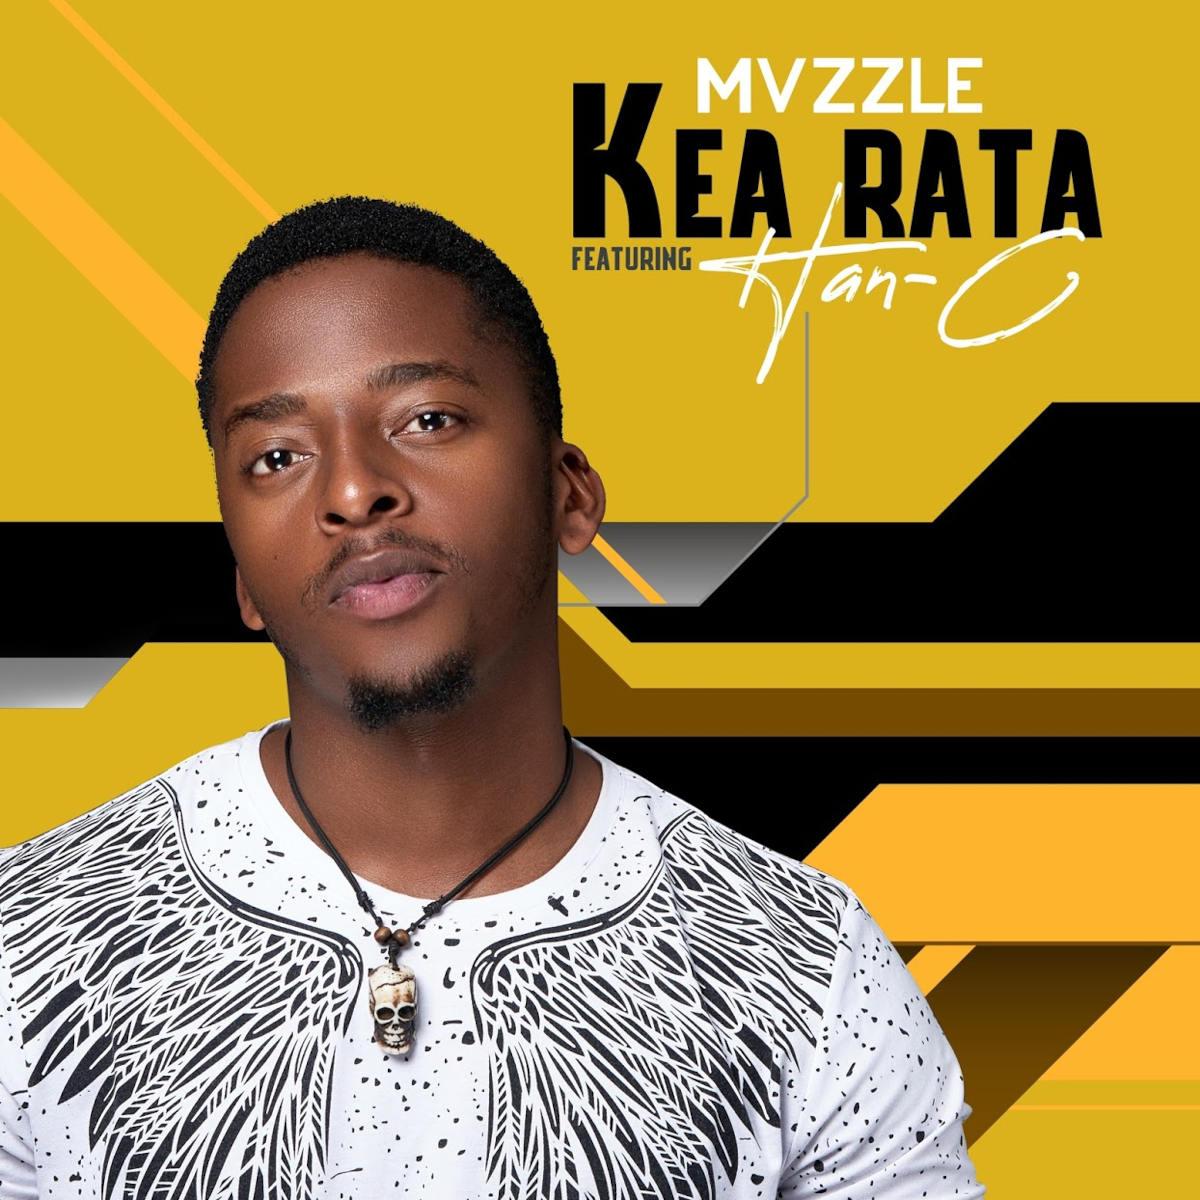 Mvzzle - Kea Rata (feat. Han-C)